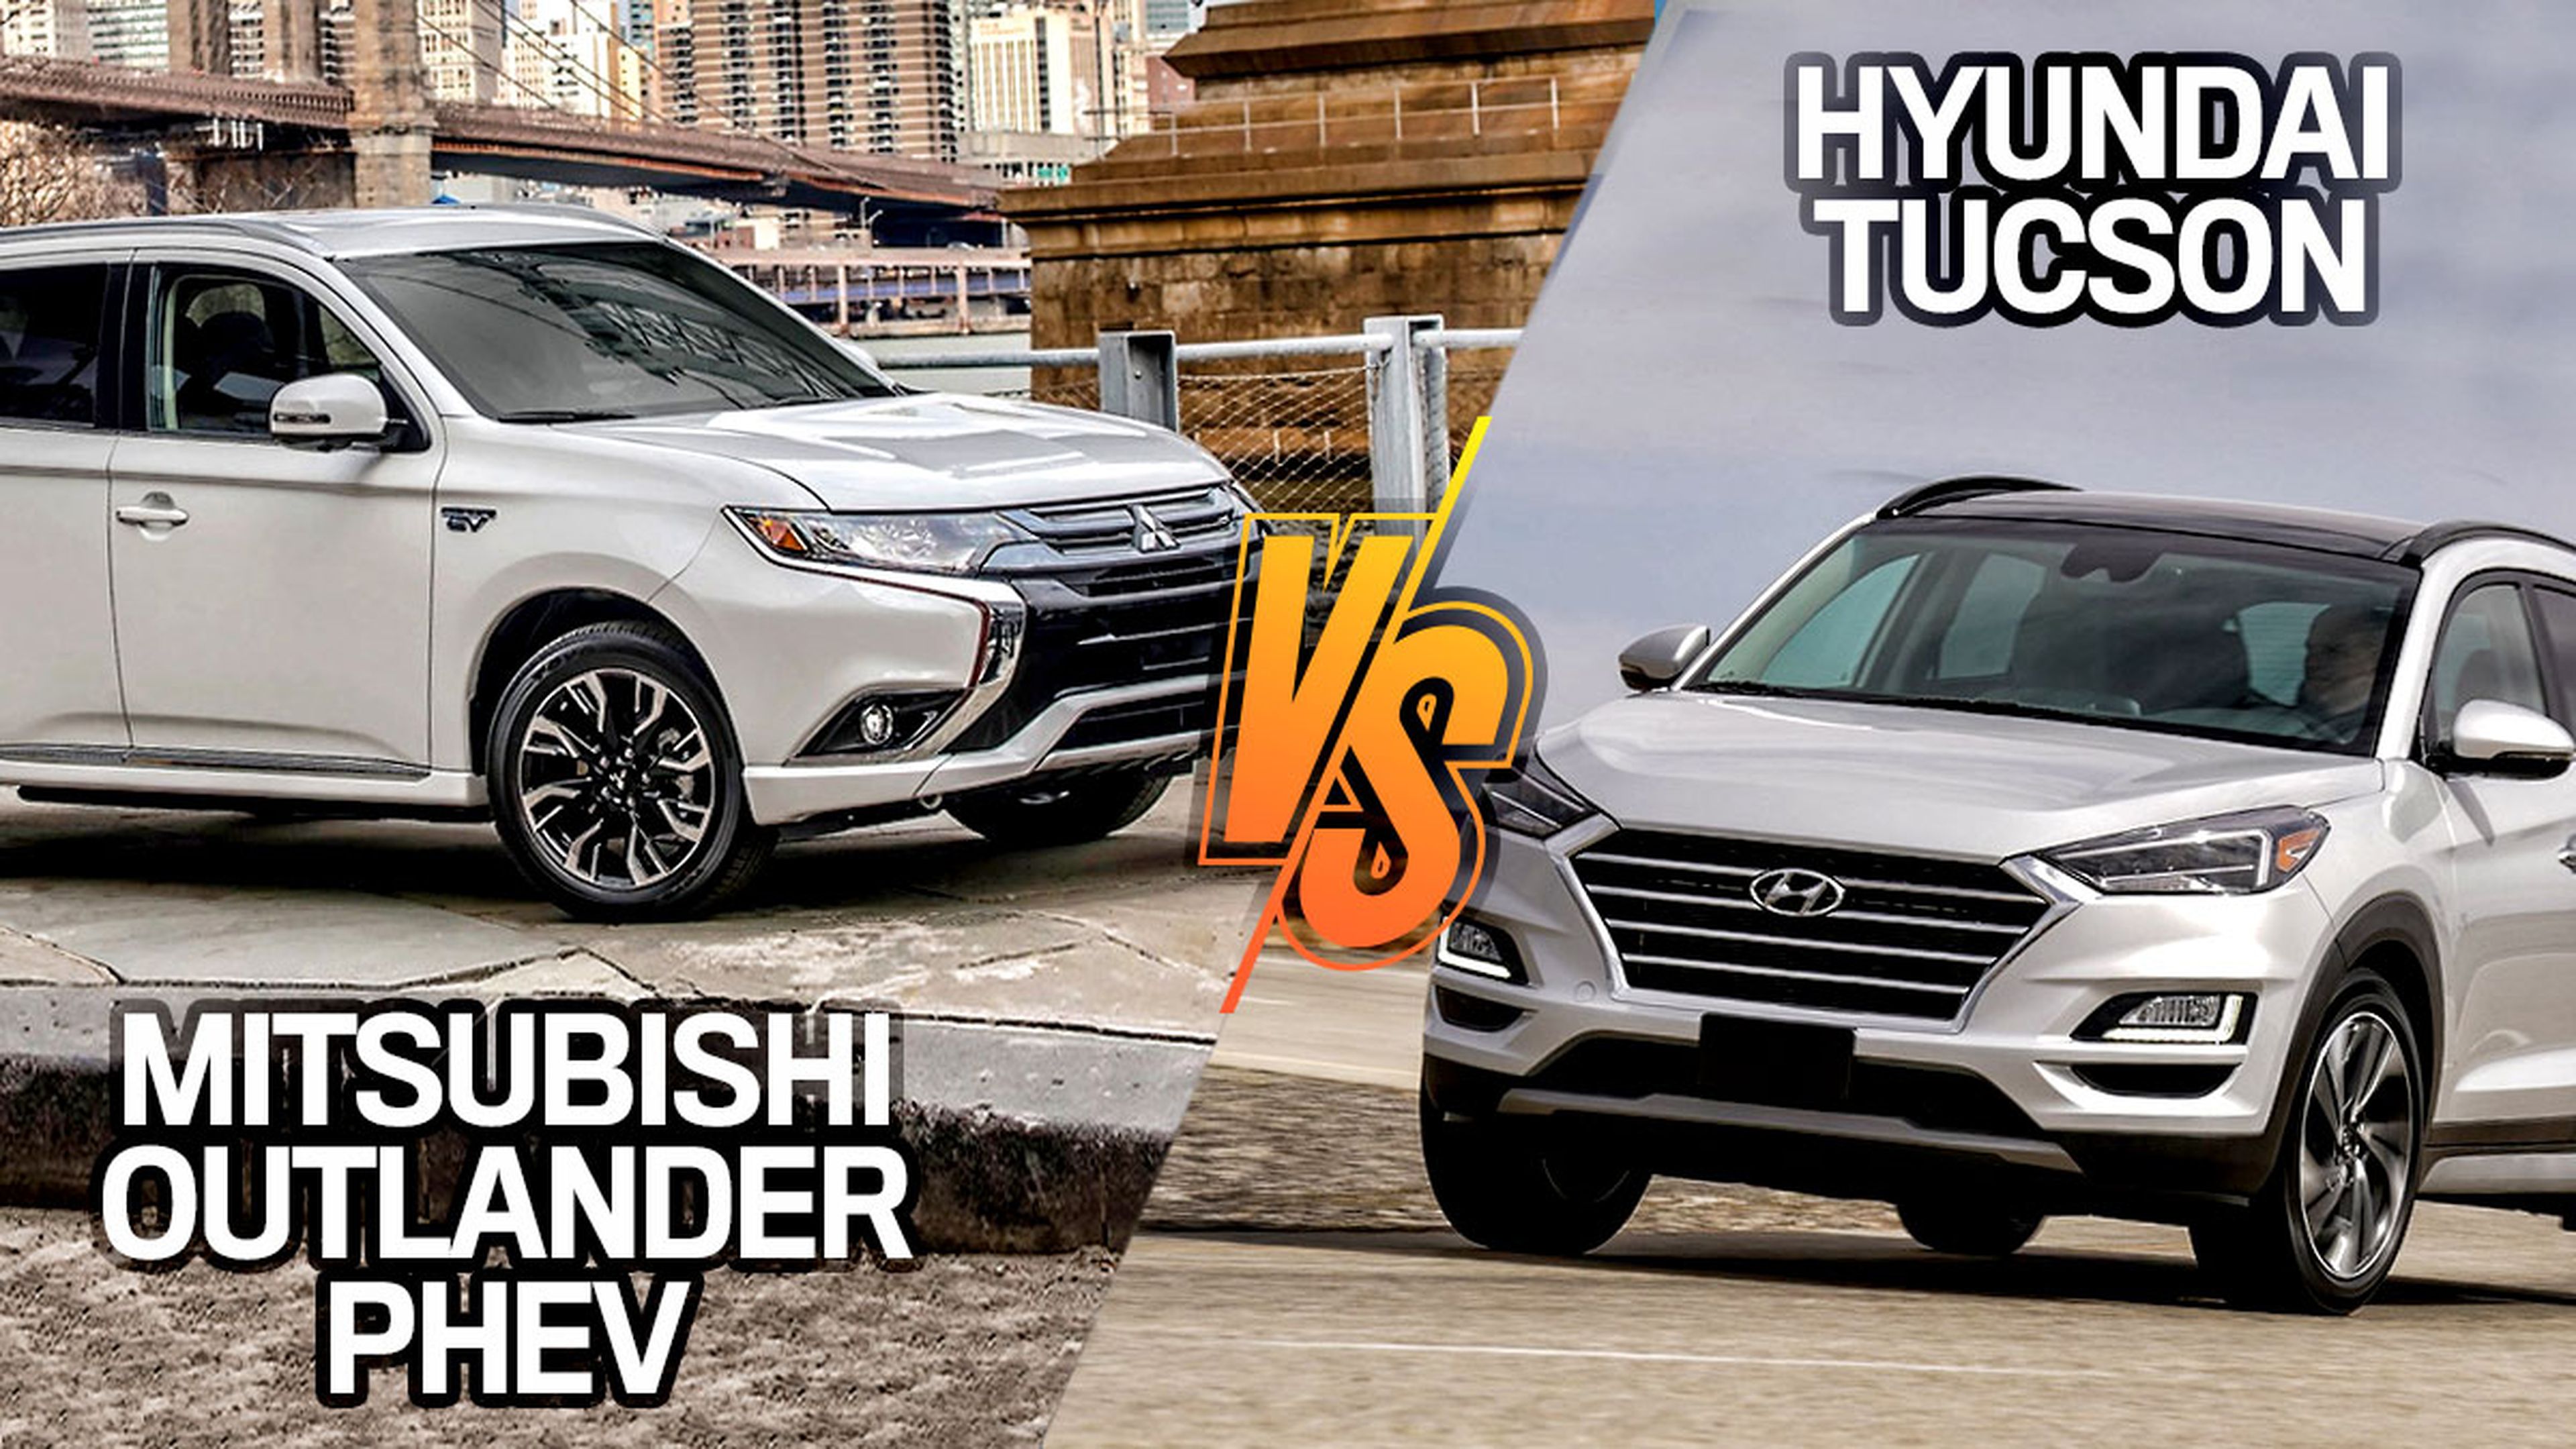 ¿Mitsubishi Outlander o Hyundai Tucson?